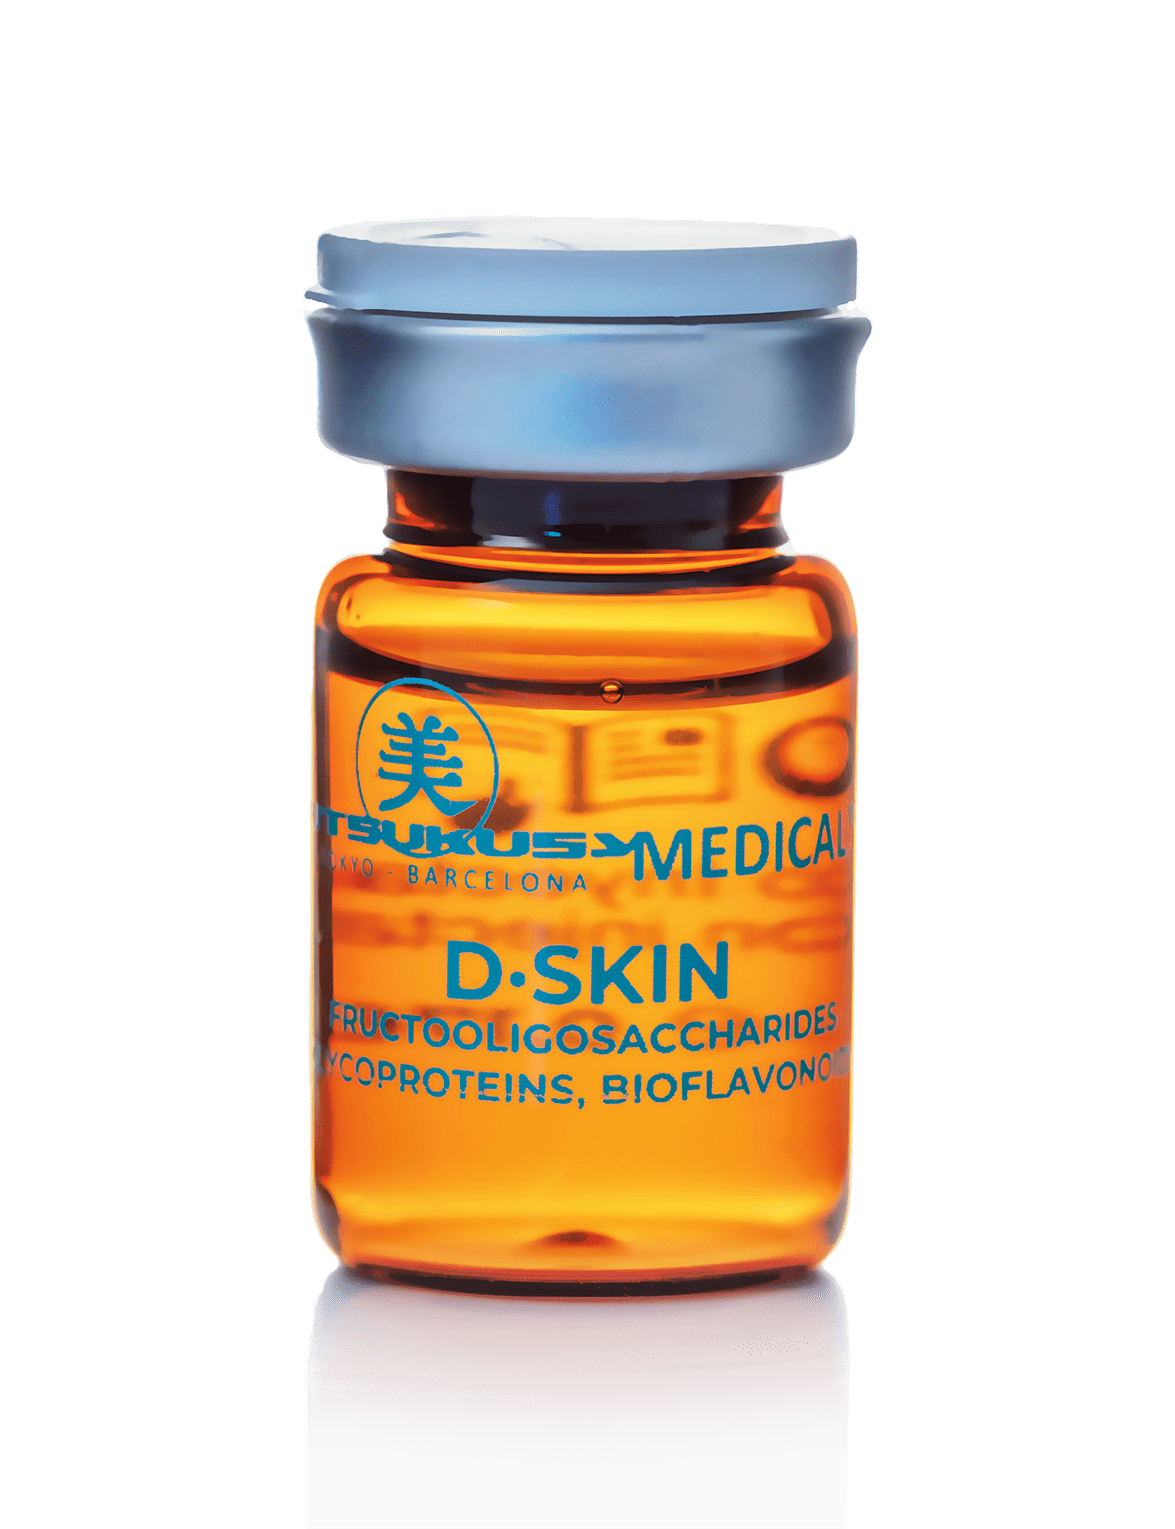 D Skin  – steriles Microneedling Serum